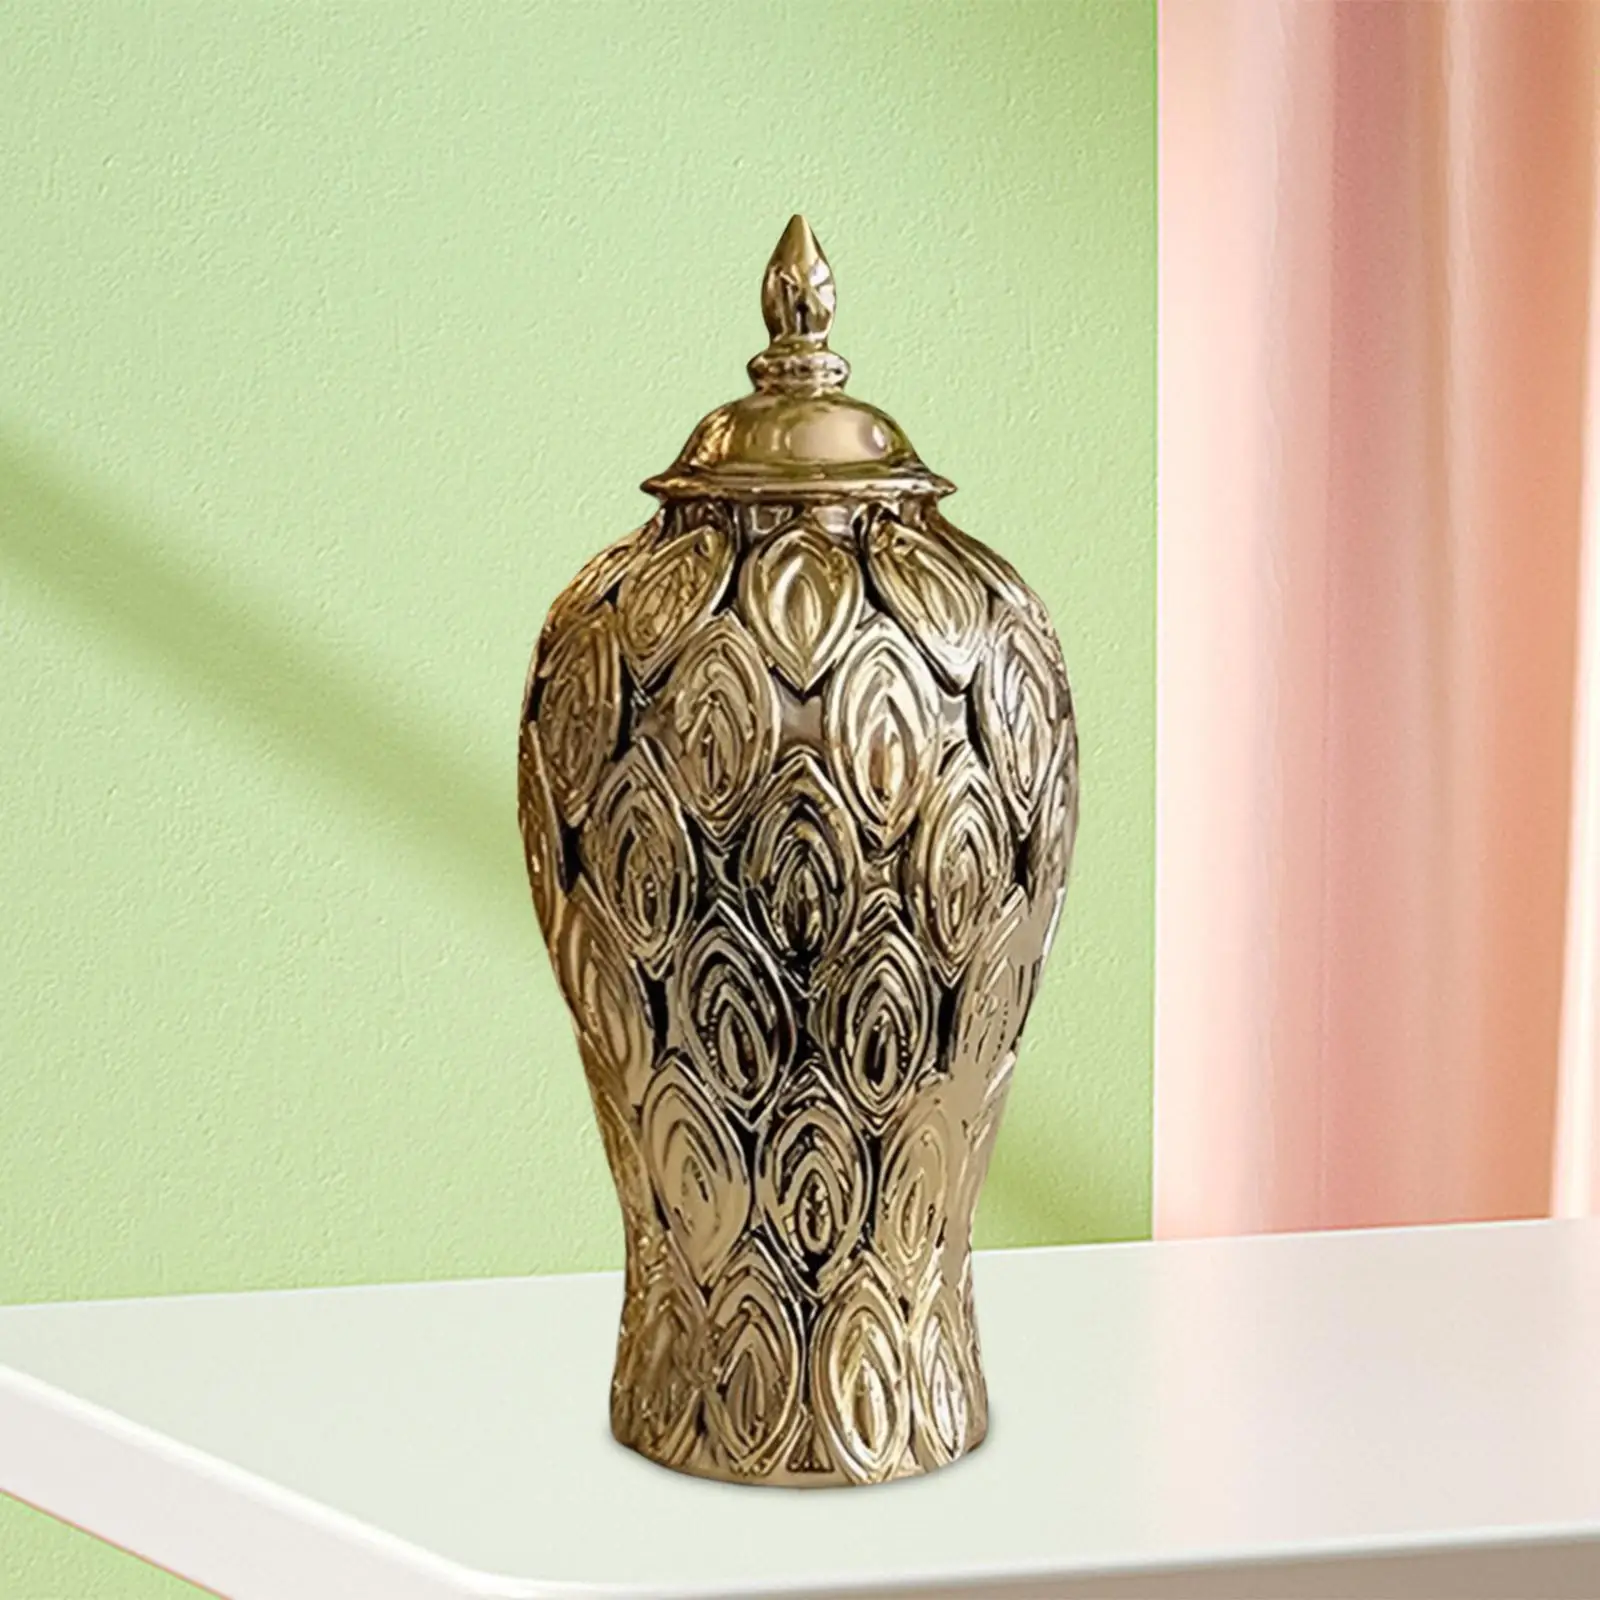 Luxury Porcelain Flower Vases Temple Jar Storage Bottle Ornament Decorative Centerpieces Candy Porcelain Vase